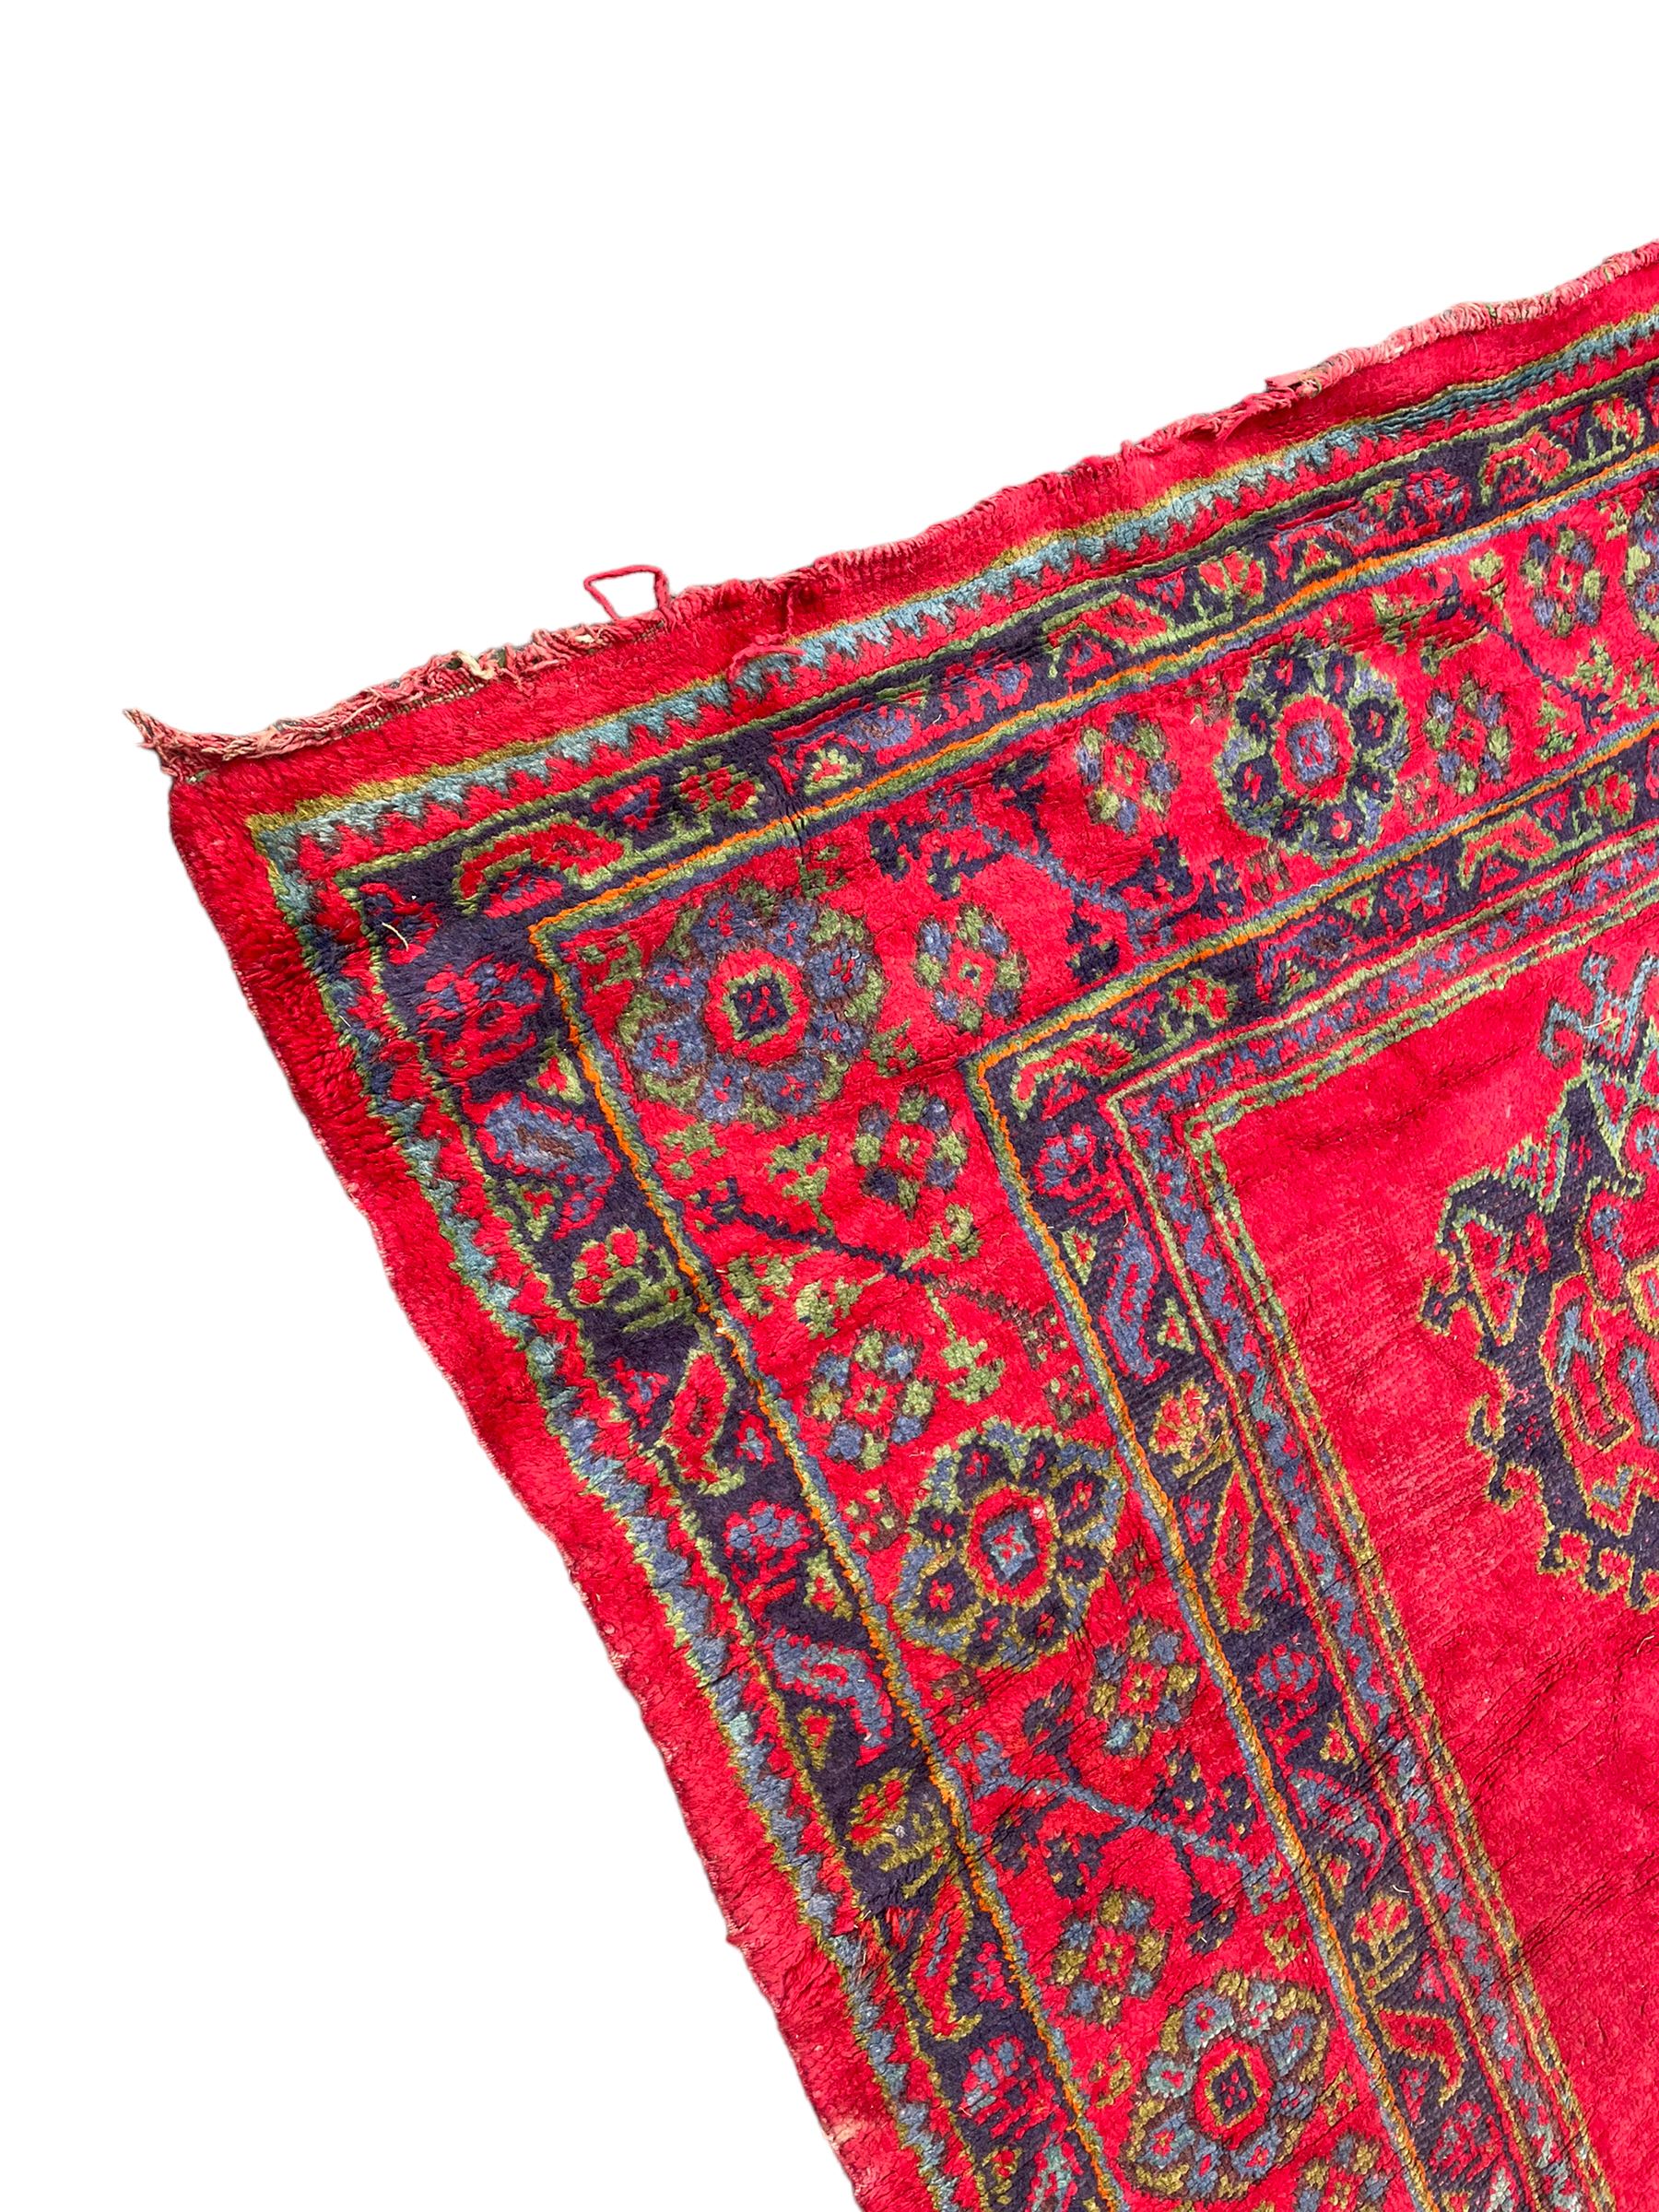 Early 20th century Western Anatolia Turkish Oushak crimson ground carpet - Image 2 of 10